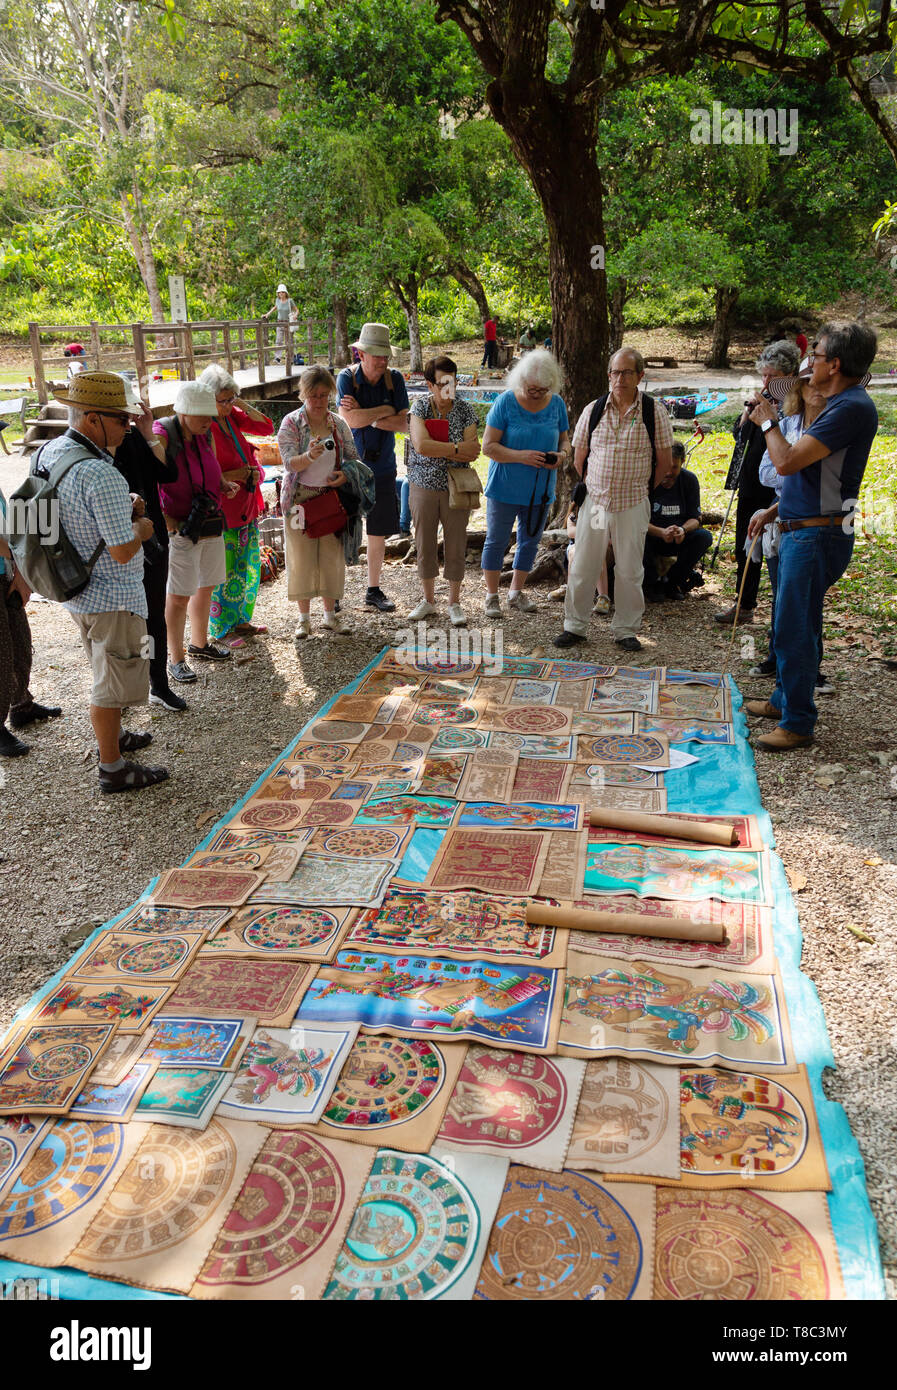 Mexique tourisme - les touristes à la recherche de produits artisanaux à vendre comme souvenirs de voyage site Maya de Palenque, Mexique, Amérique Latine Banque D'Images